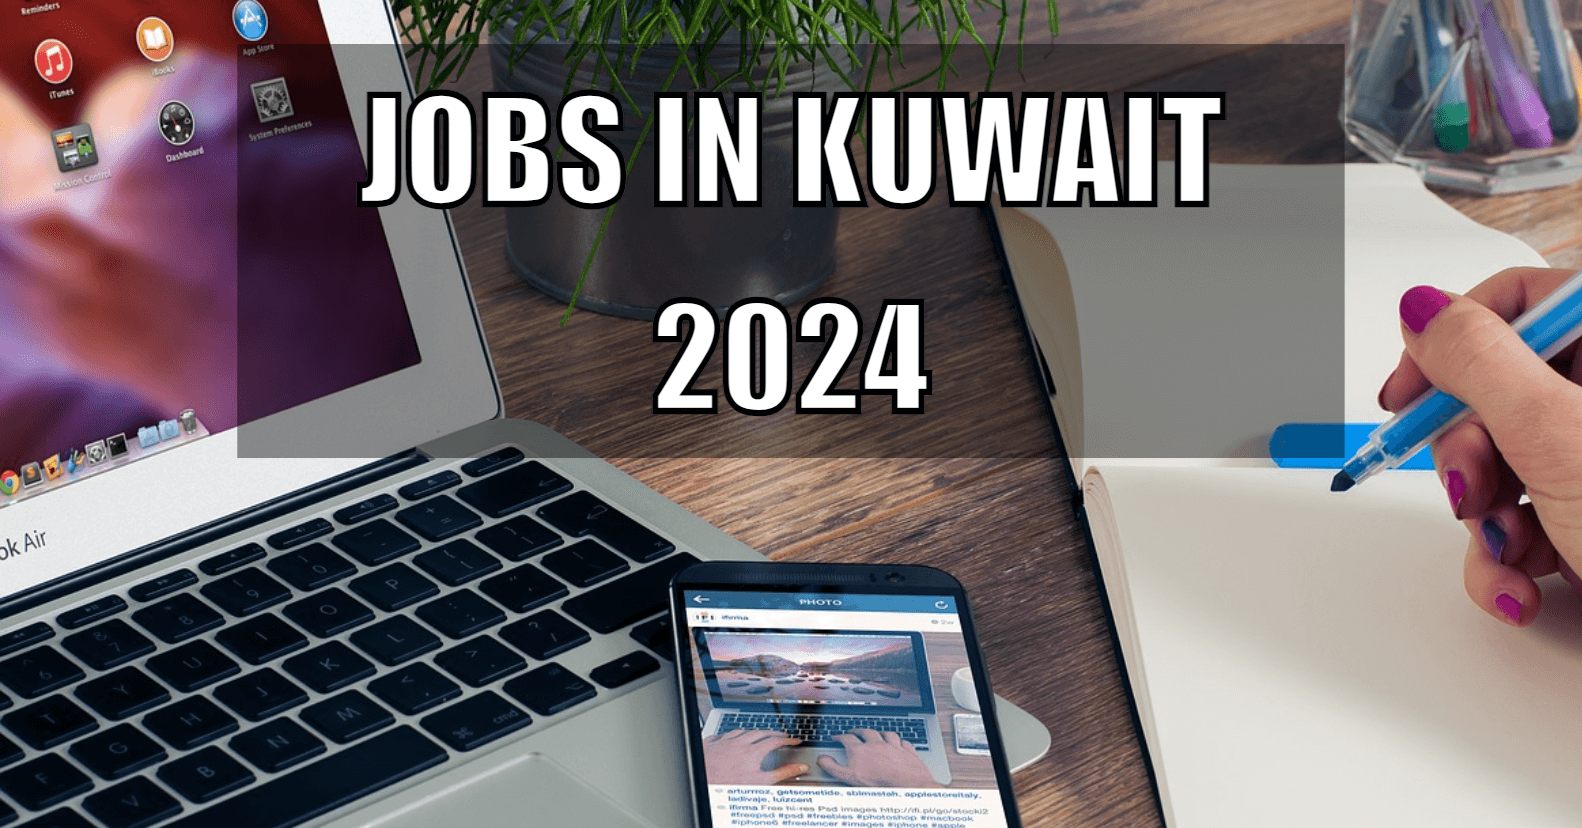 Jobs in Kuwait 2024